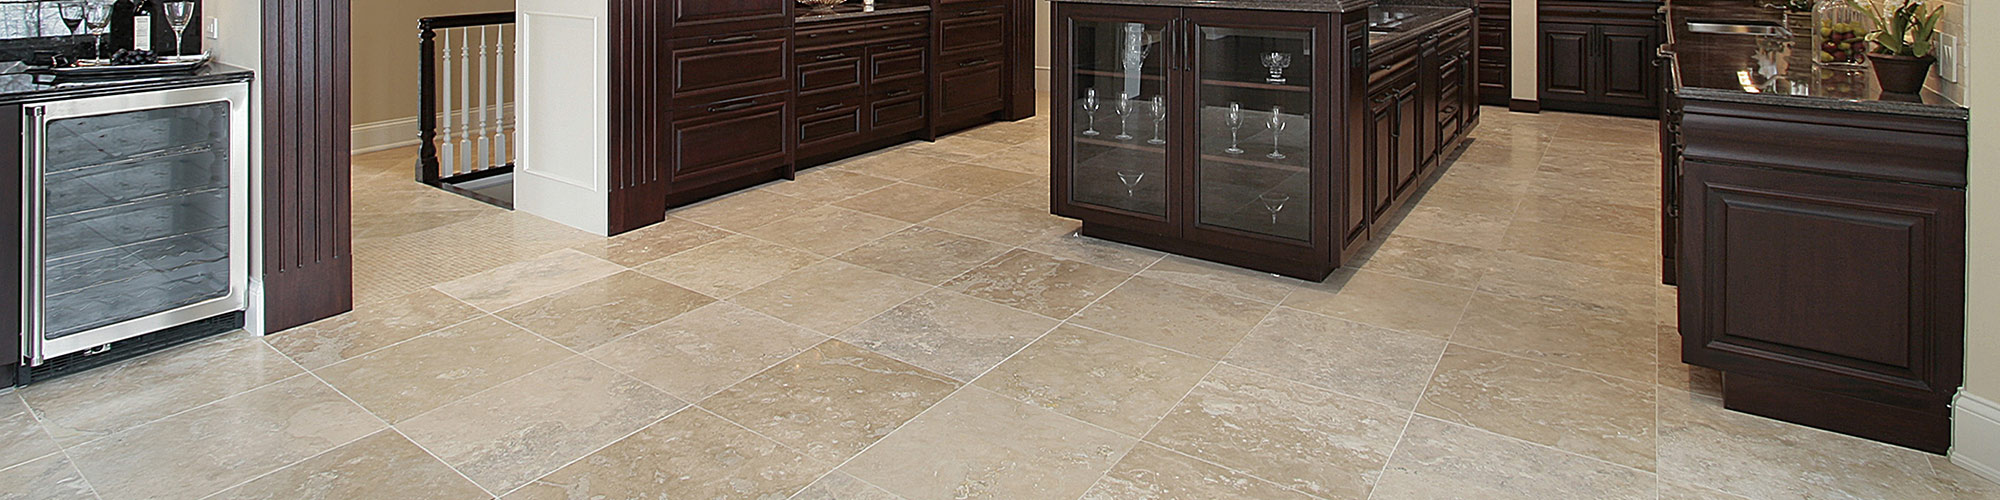 Kitchen tile floor